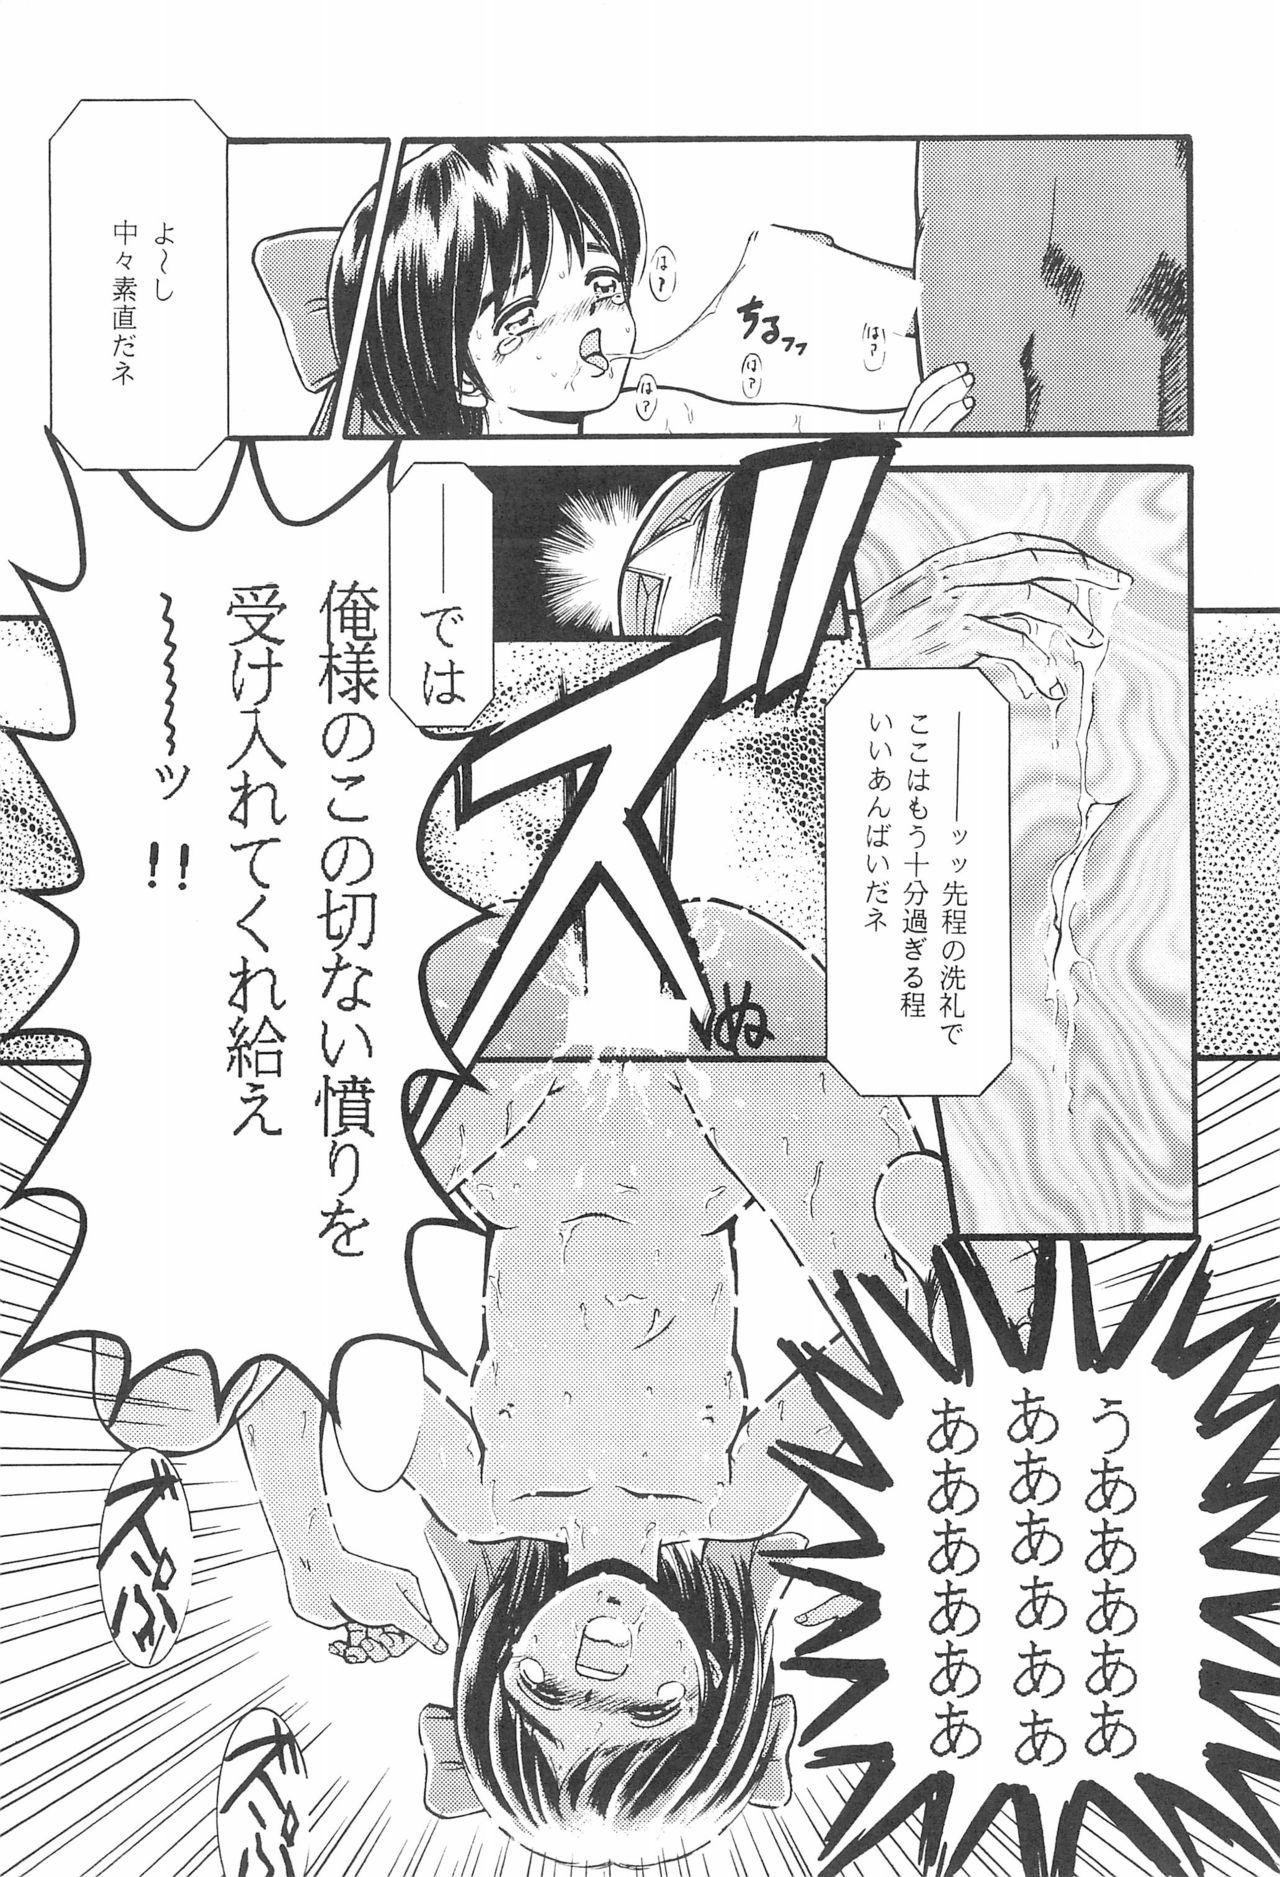 Semen Zoku Momoiro Ainu-Musume - Samurai spirits Anime - Page 11